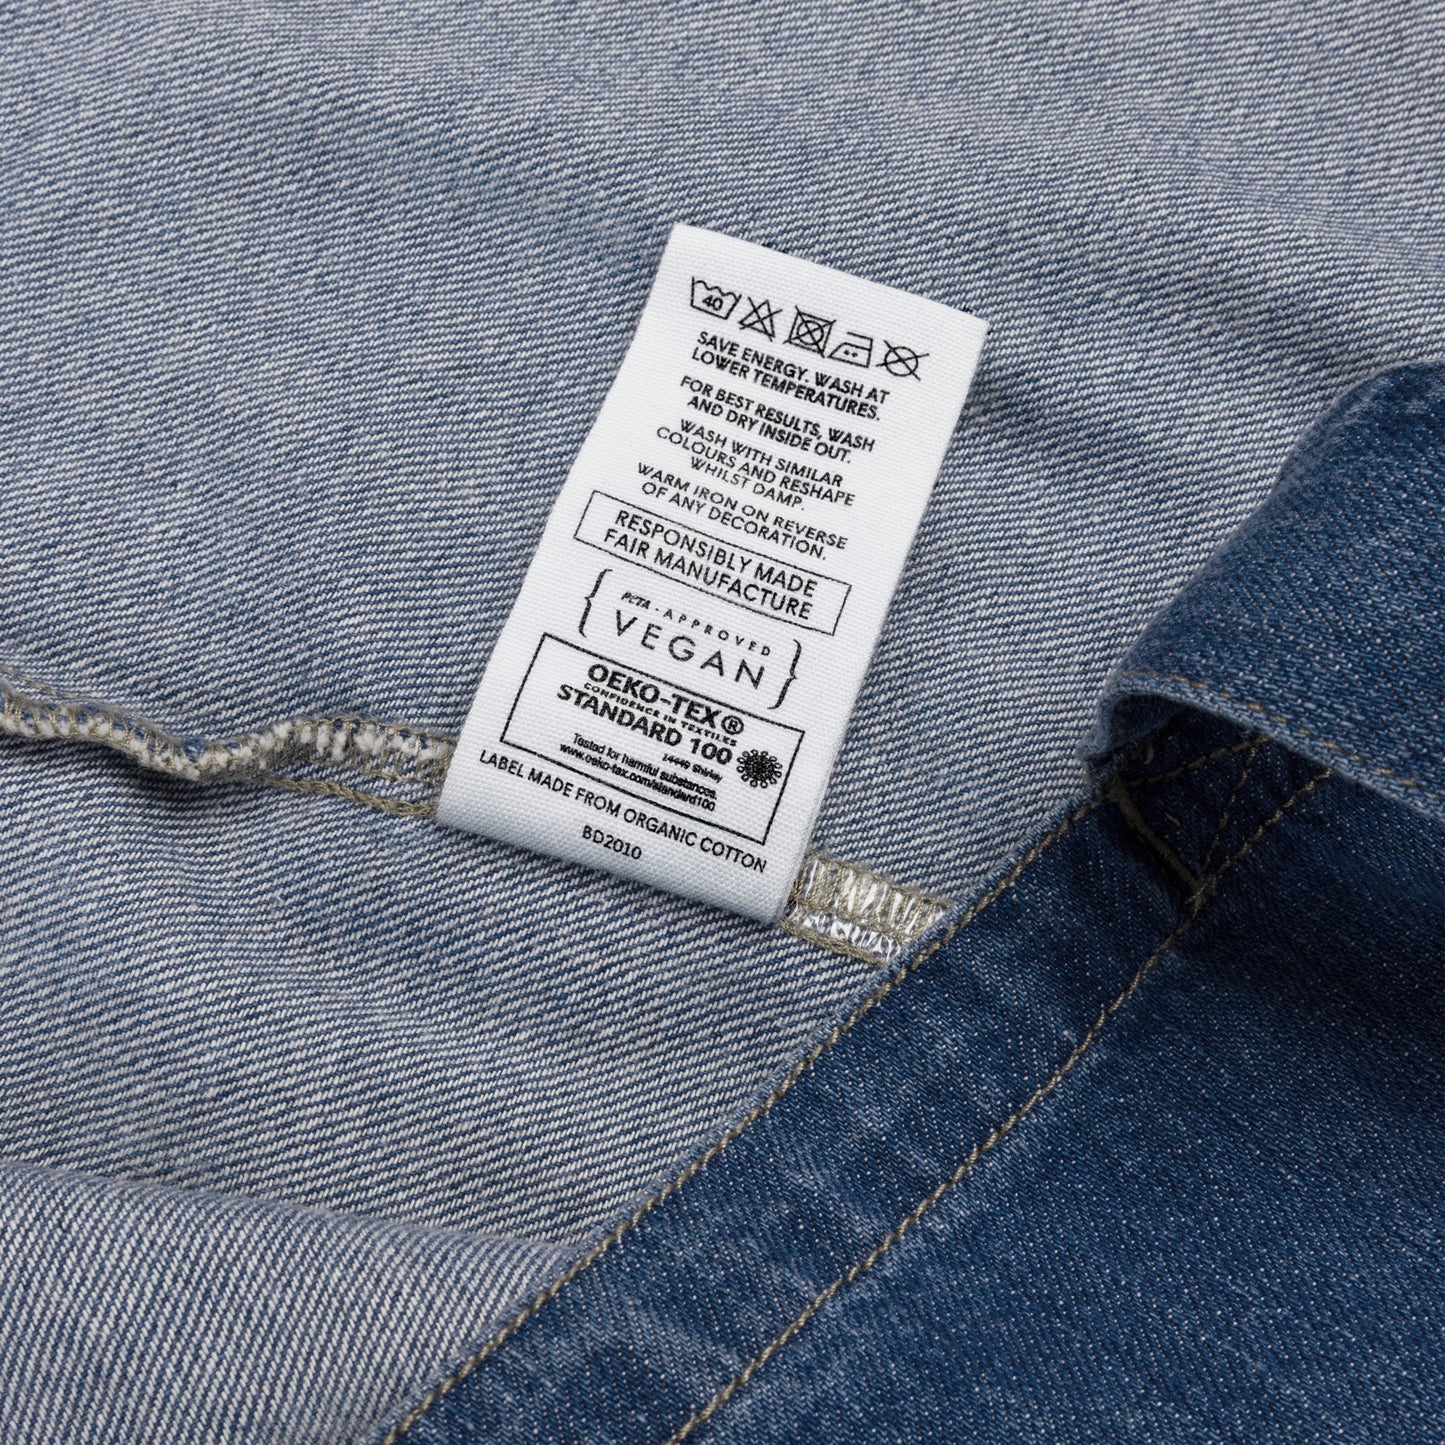 Ecobag jeans de algodão orgânico